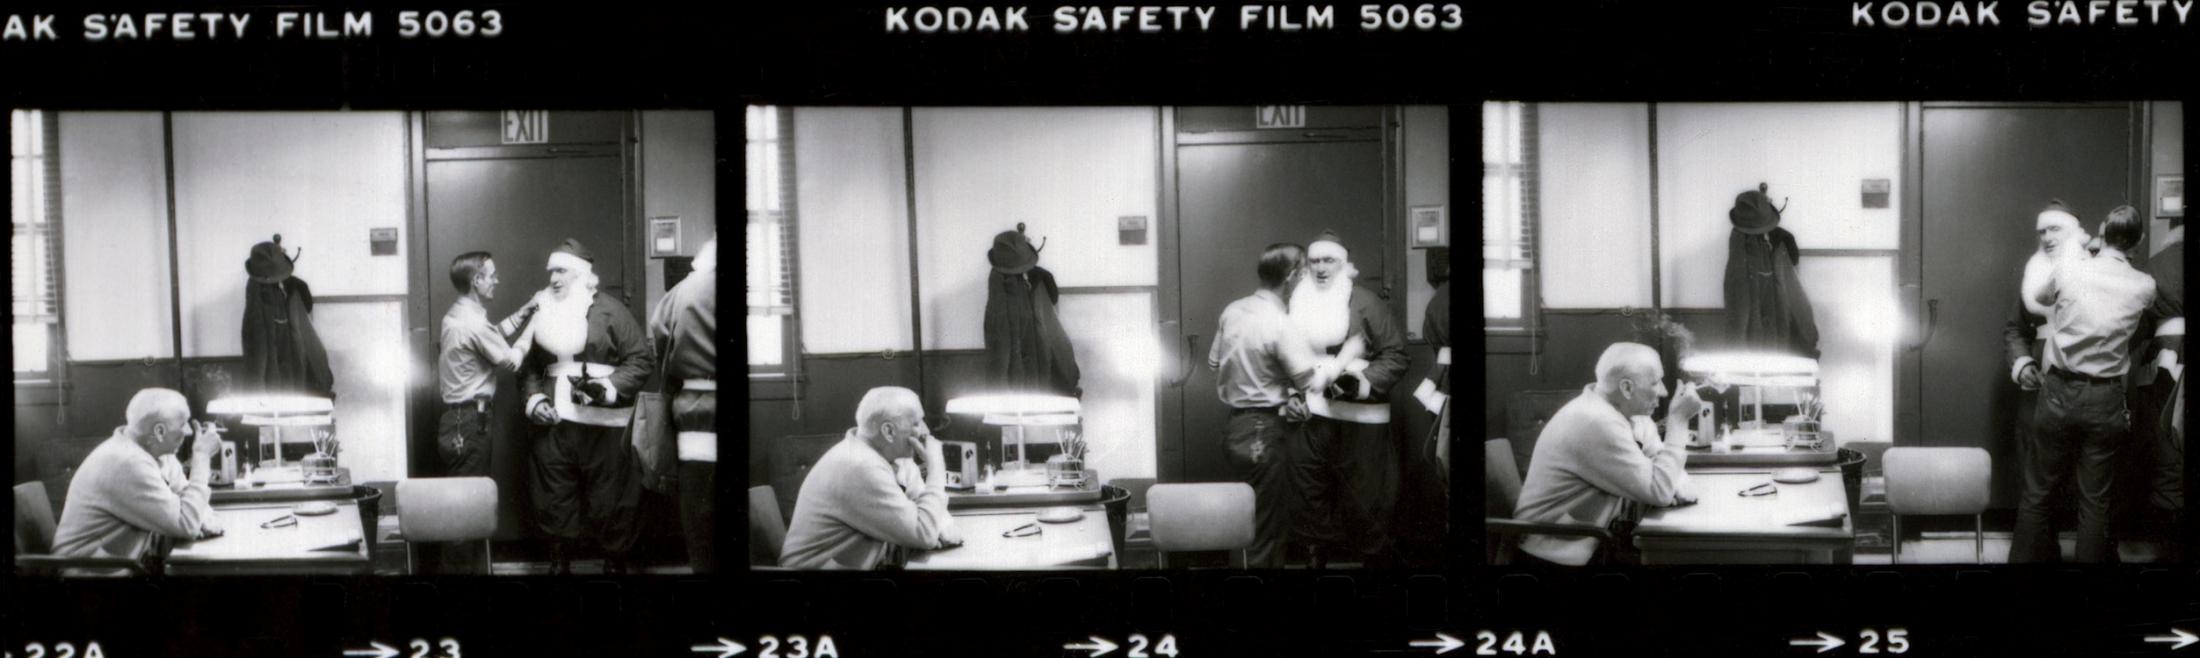 Santa Claus. Contact Sheet. New York City. 1977.